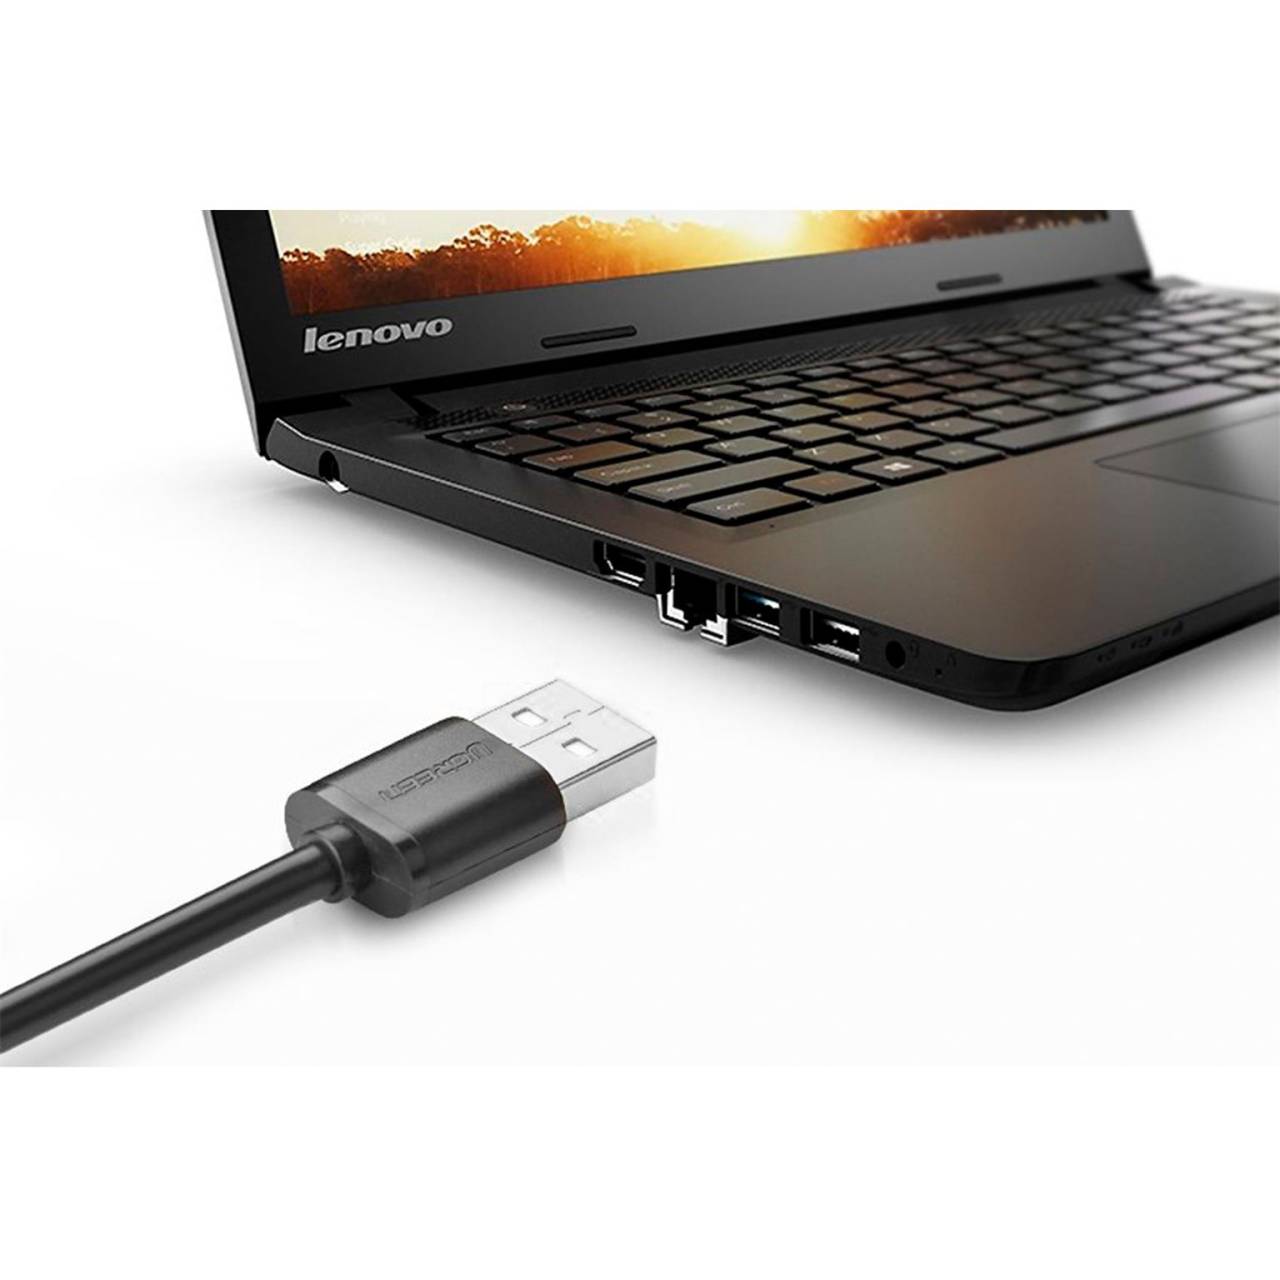 Ugreen Verlängerungskabel – USB-A (w.) auf USB-A (m.) für Smartphones und andere Geräte, 480 Mb/s, Länge 2 m